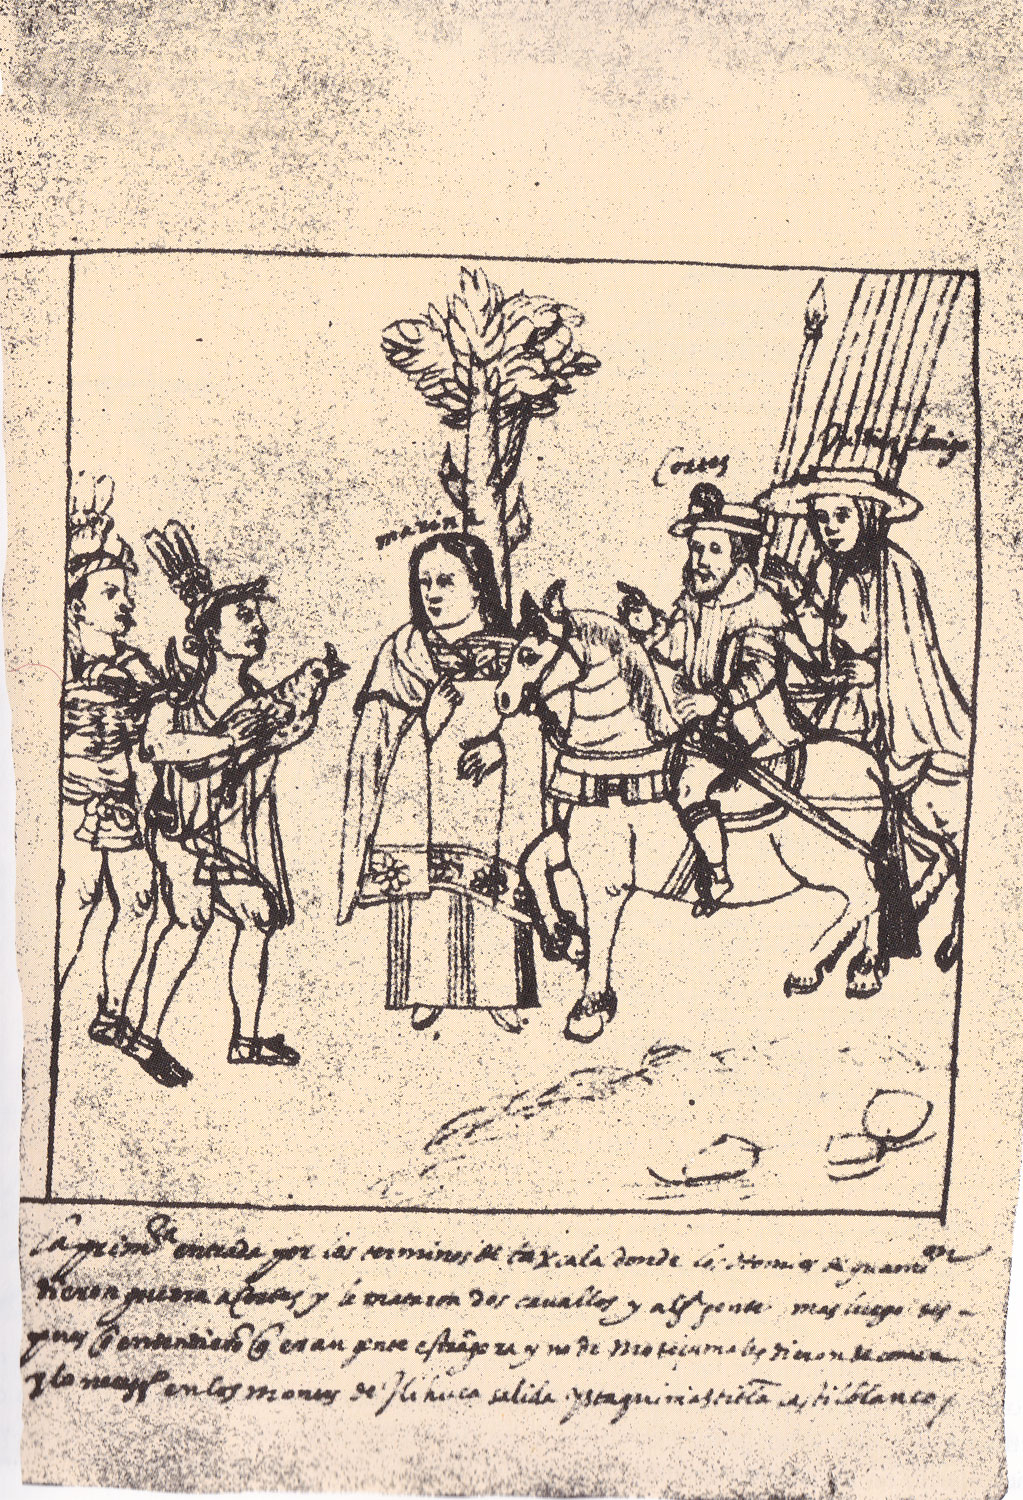 Hernán Cortés, Marina en Tlaxcala . En Diego Muñoz Camargo, Descripción de la ciudad y provincia de Tlaxcala, Lám. 29. Anónimo. ca. 1580